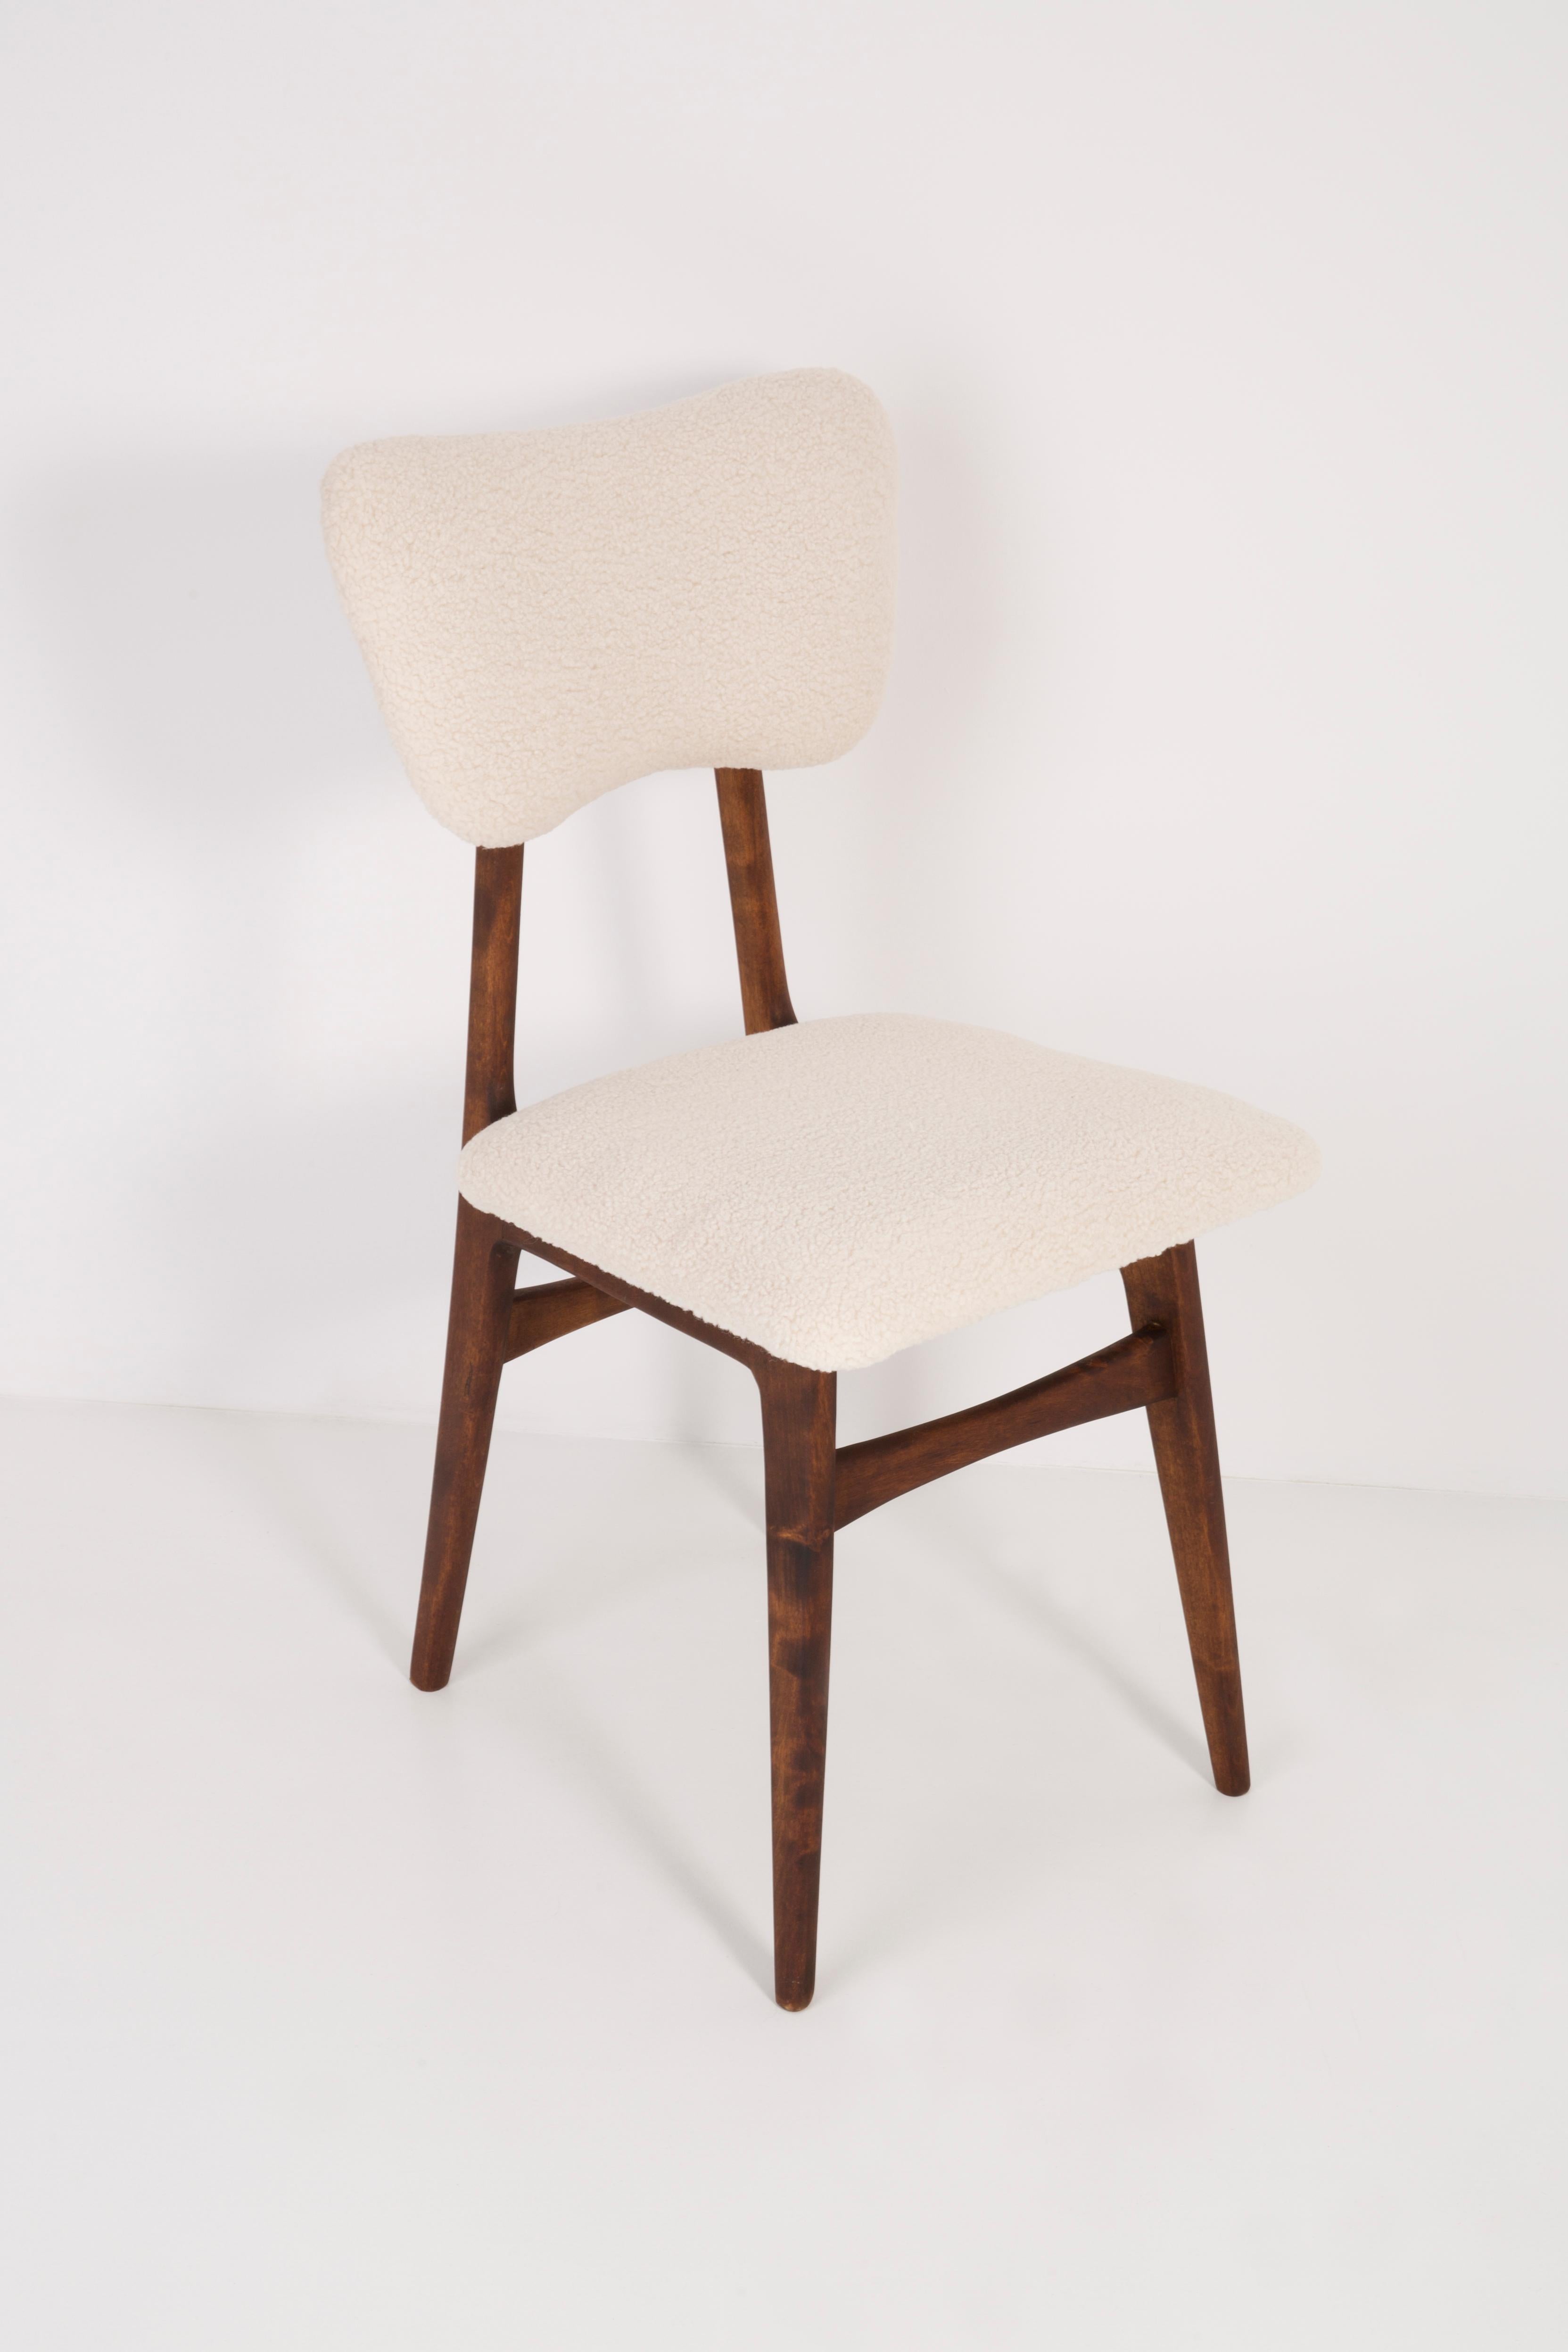 Chaise conçue par le professeur Rajmund Halas. Fabriqué en bois de hêtre. Le fauteuil a subi une rénovation complète de la tapisserie et les boiseries ont été rafraîchies. L'assise et le dossier sont habillés de tissu bouclé crème, durable et